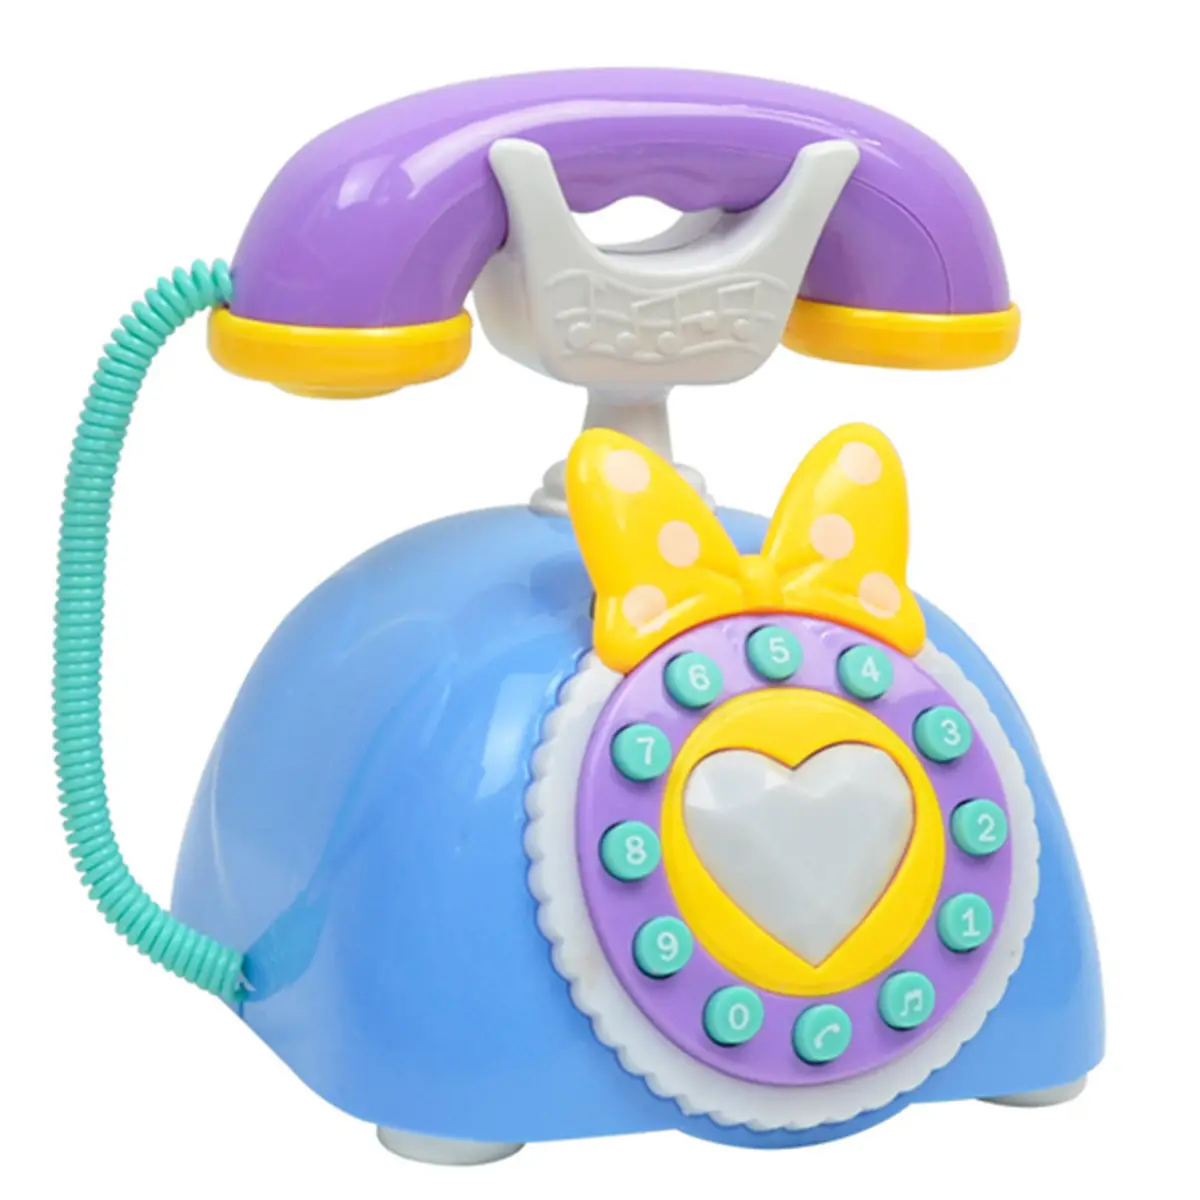 Teléfono De Juguete Bebé para Niños y-Phone Educacional Aprendizaje De Juguete Niños Iphone 4s 5 Regalo 